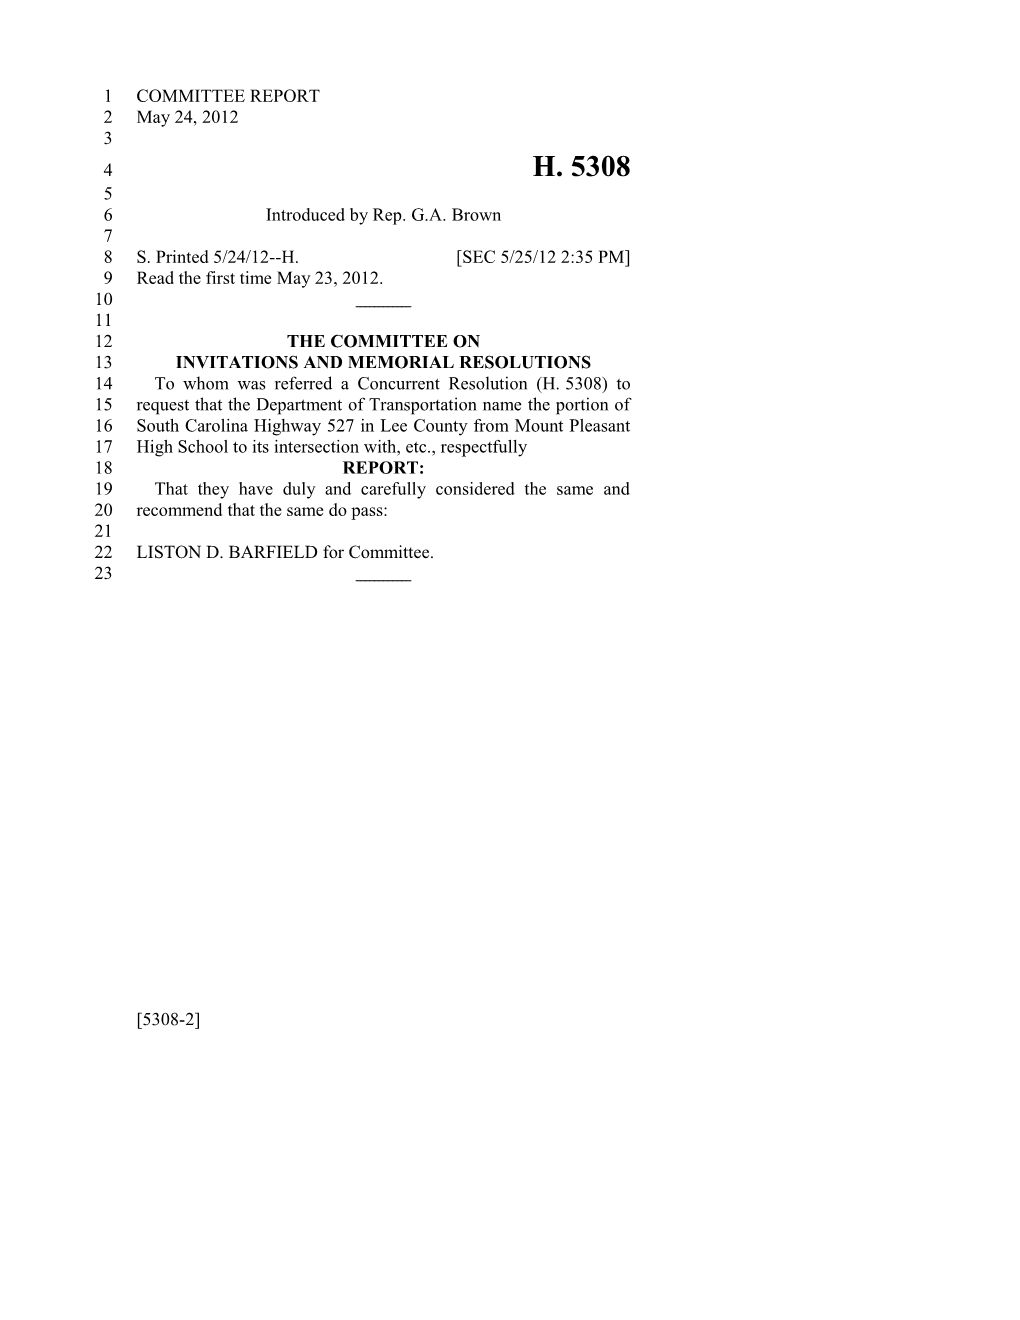 2011-2012 Bill 5308: Isaac C. Joe - South Carolina Legislature Online